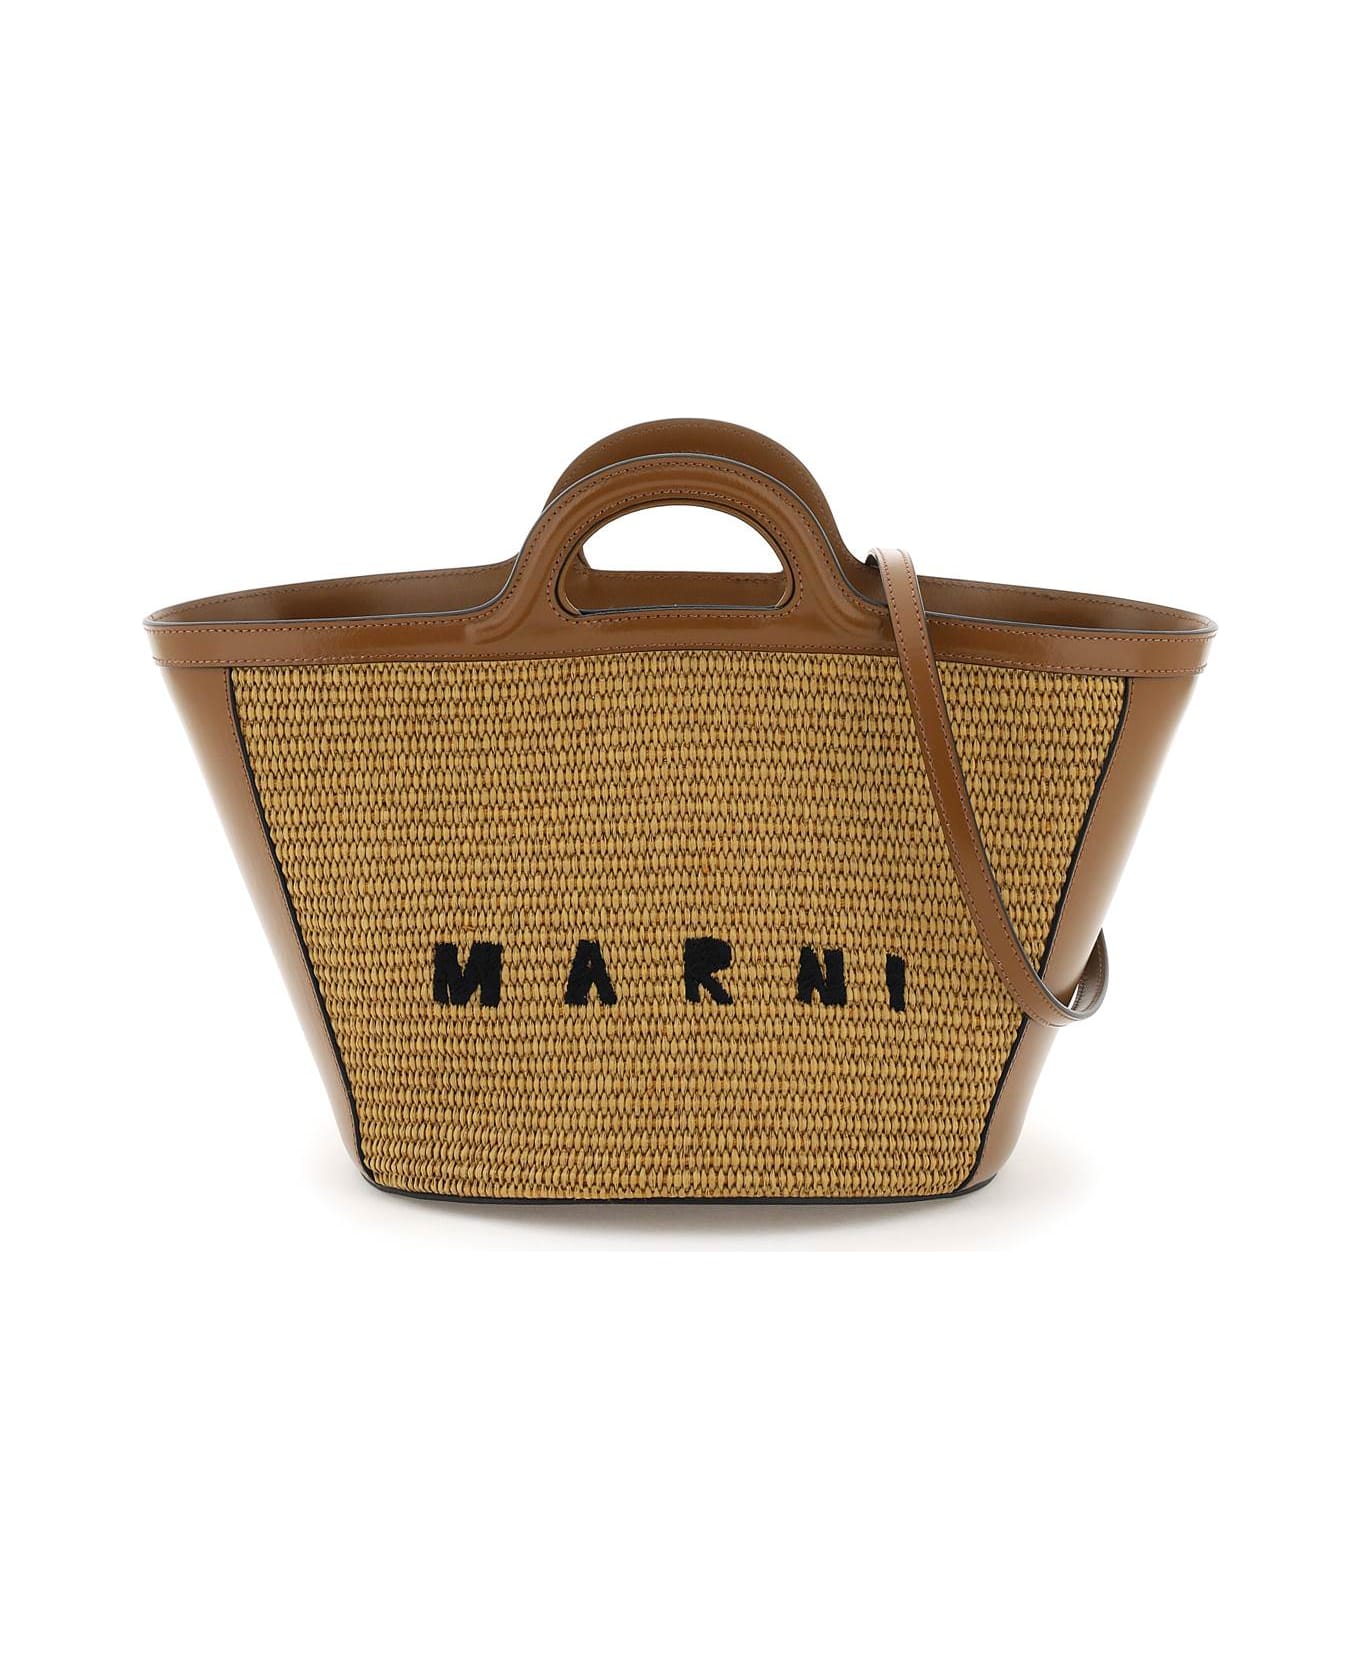 Marni Brown Leather Blend Tropical Bag - Ecru